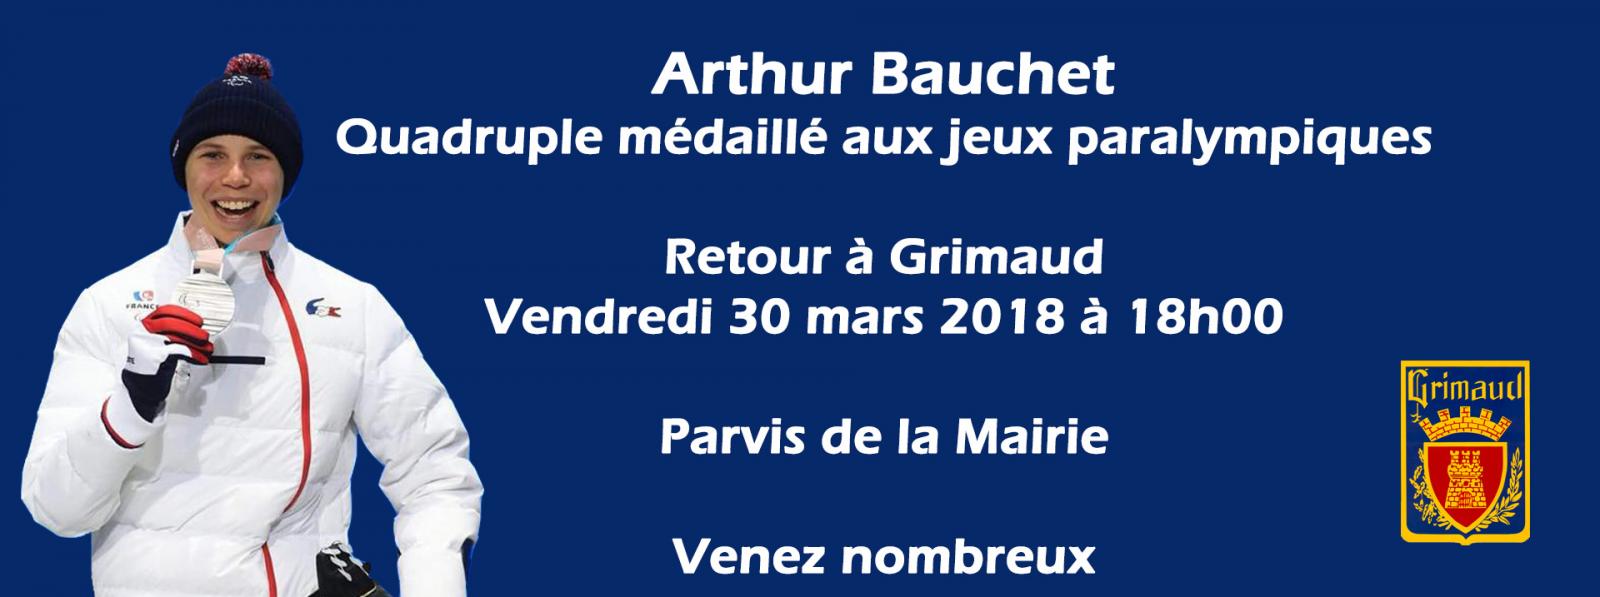 Événement : Retour à Grimaud d'Arthur Bauchet - Vendredi 30 mars 2018 à 18h00